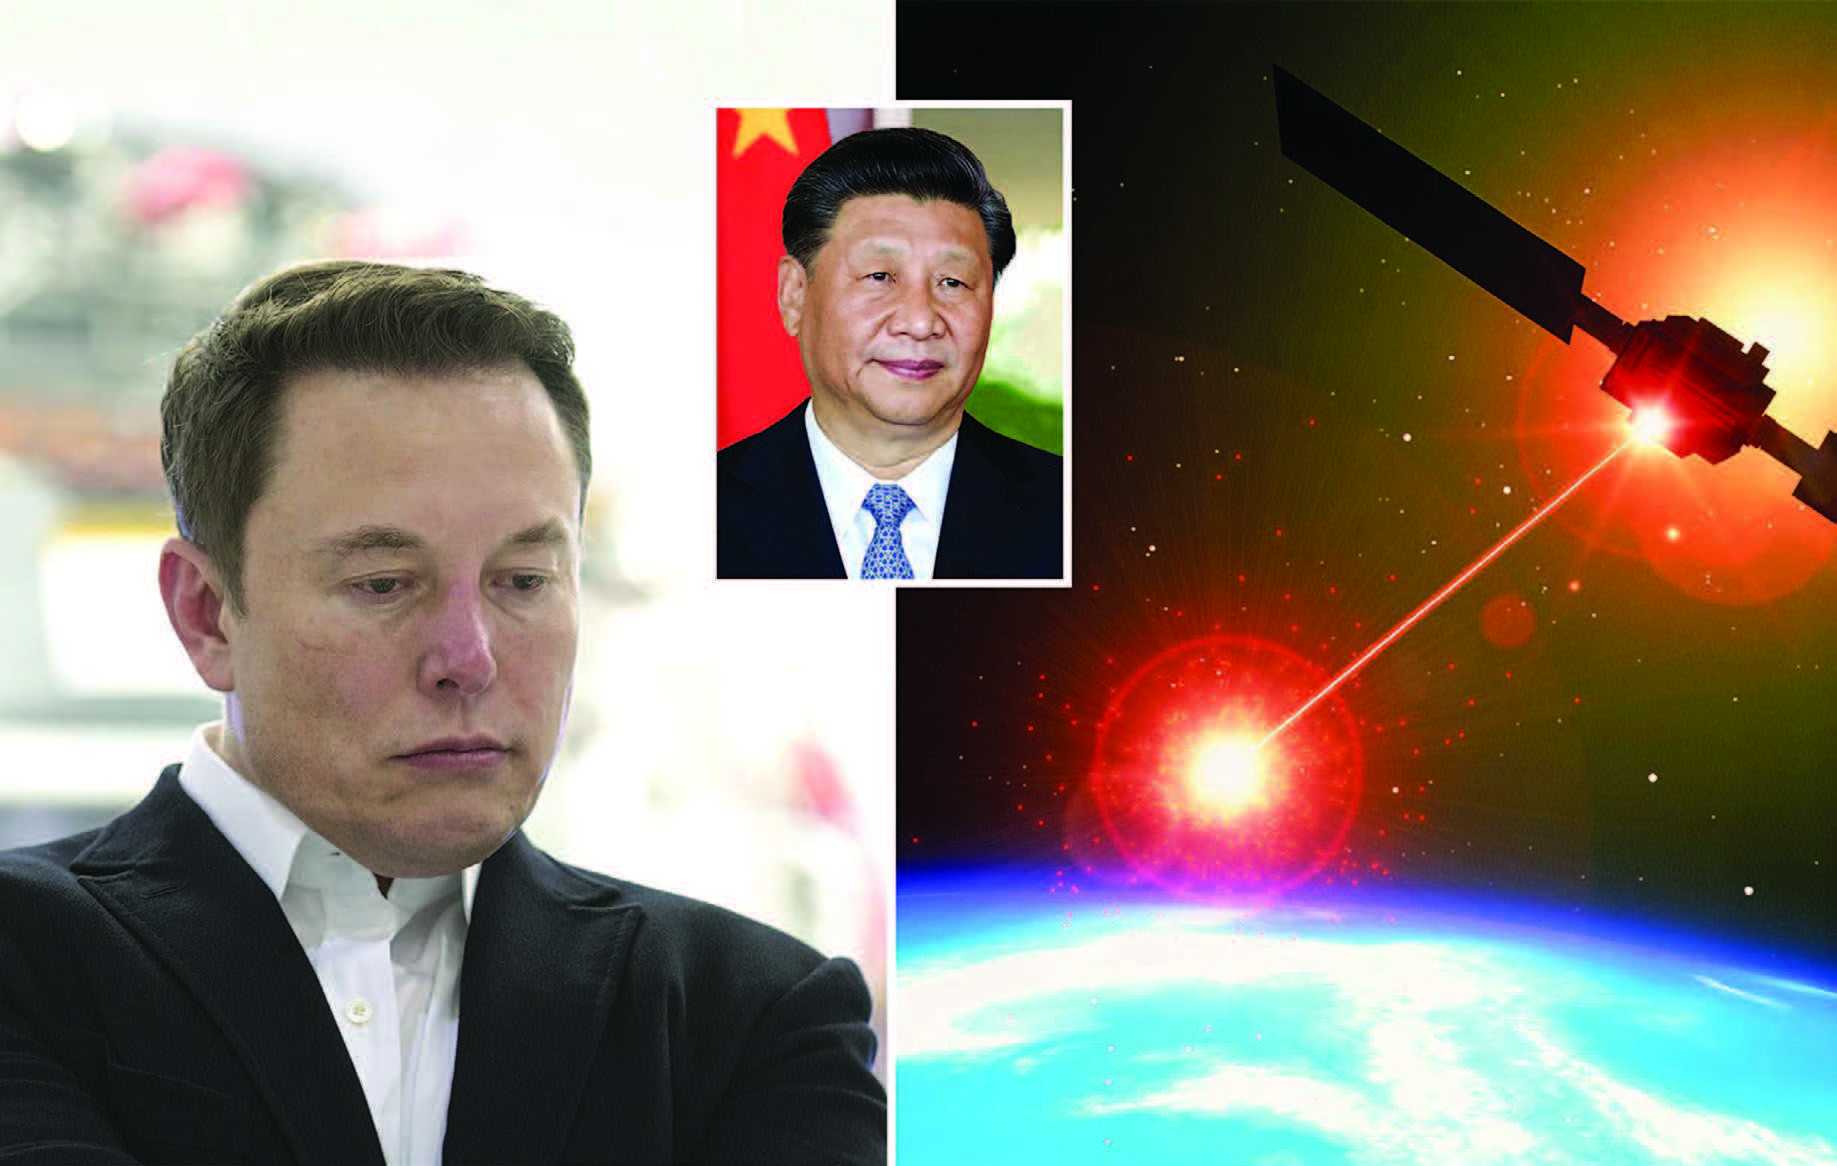 Tiongkok Harus Hancurkan Satelit Milik Elon Musk jika Ancam Keamanan